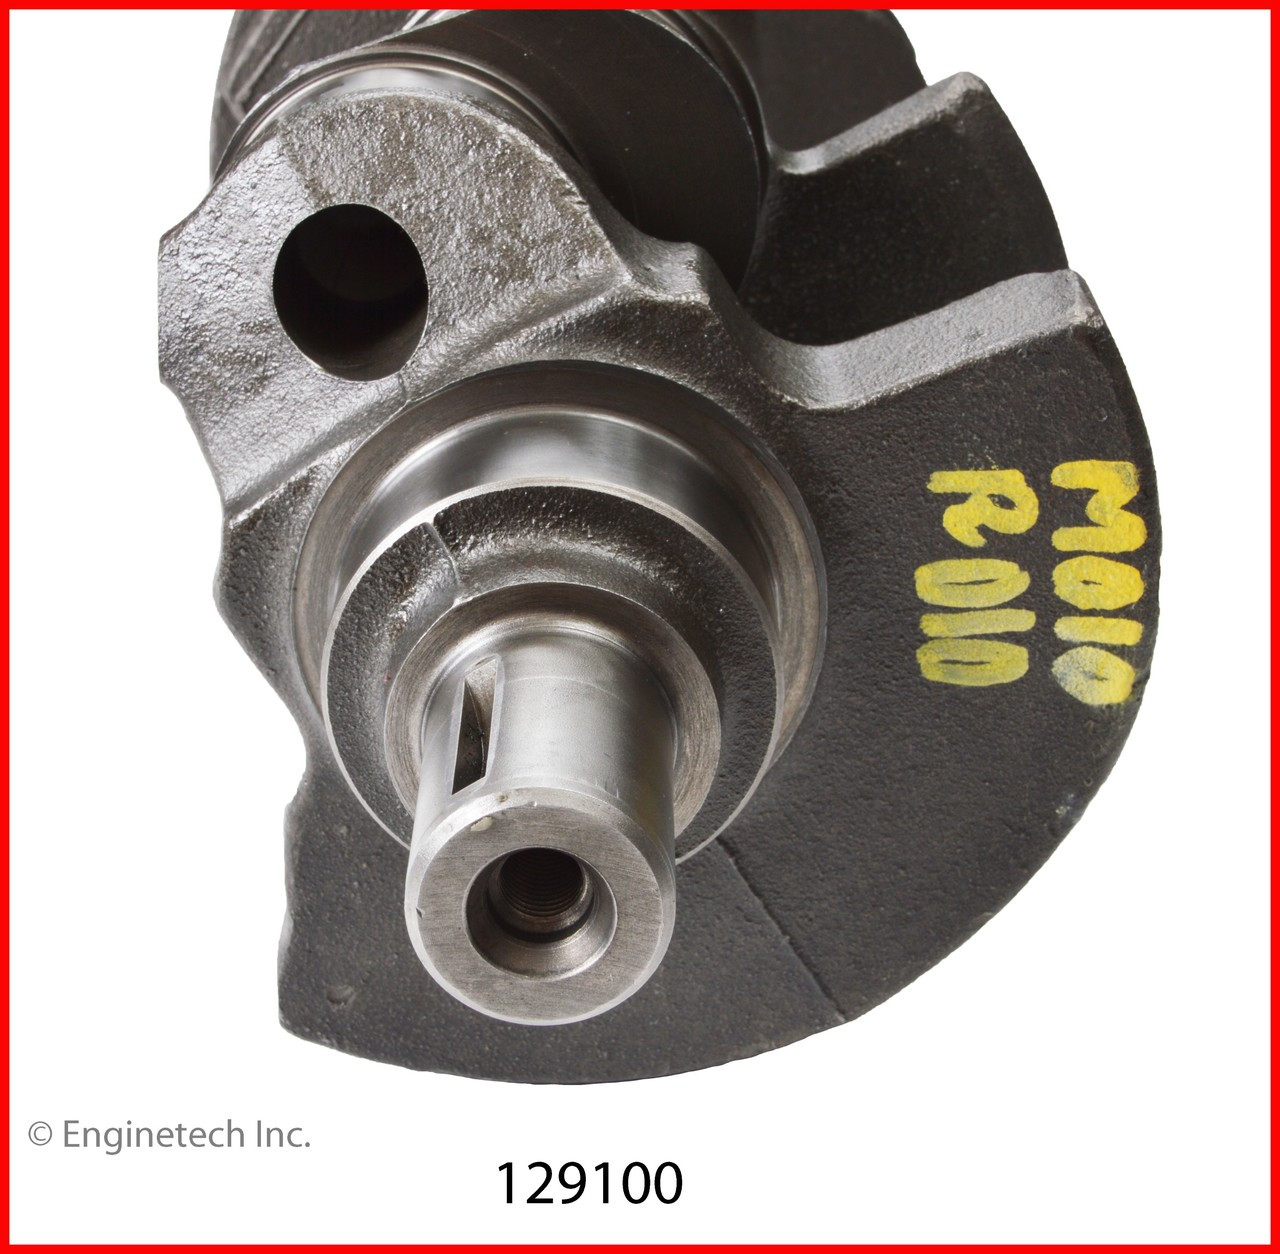 Crankshaft Kit - 1999 GMC P3500 4.3L (129100.K178)